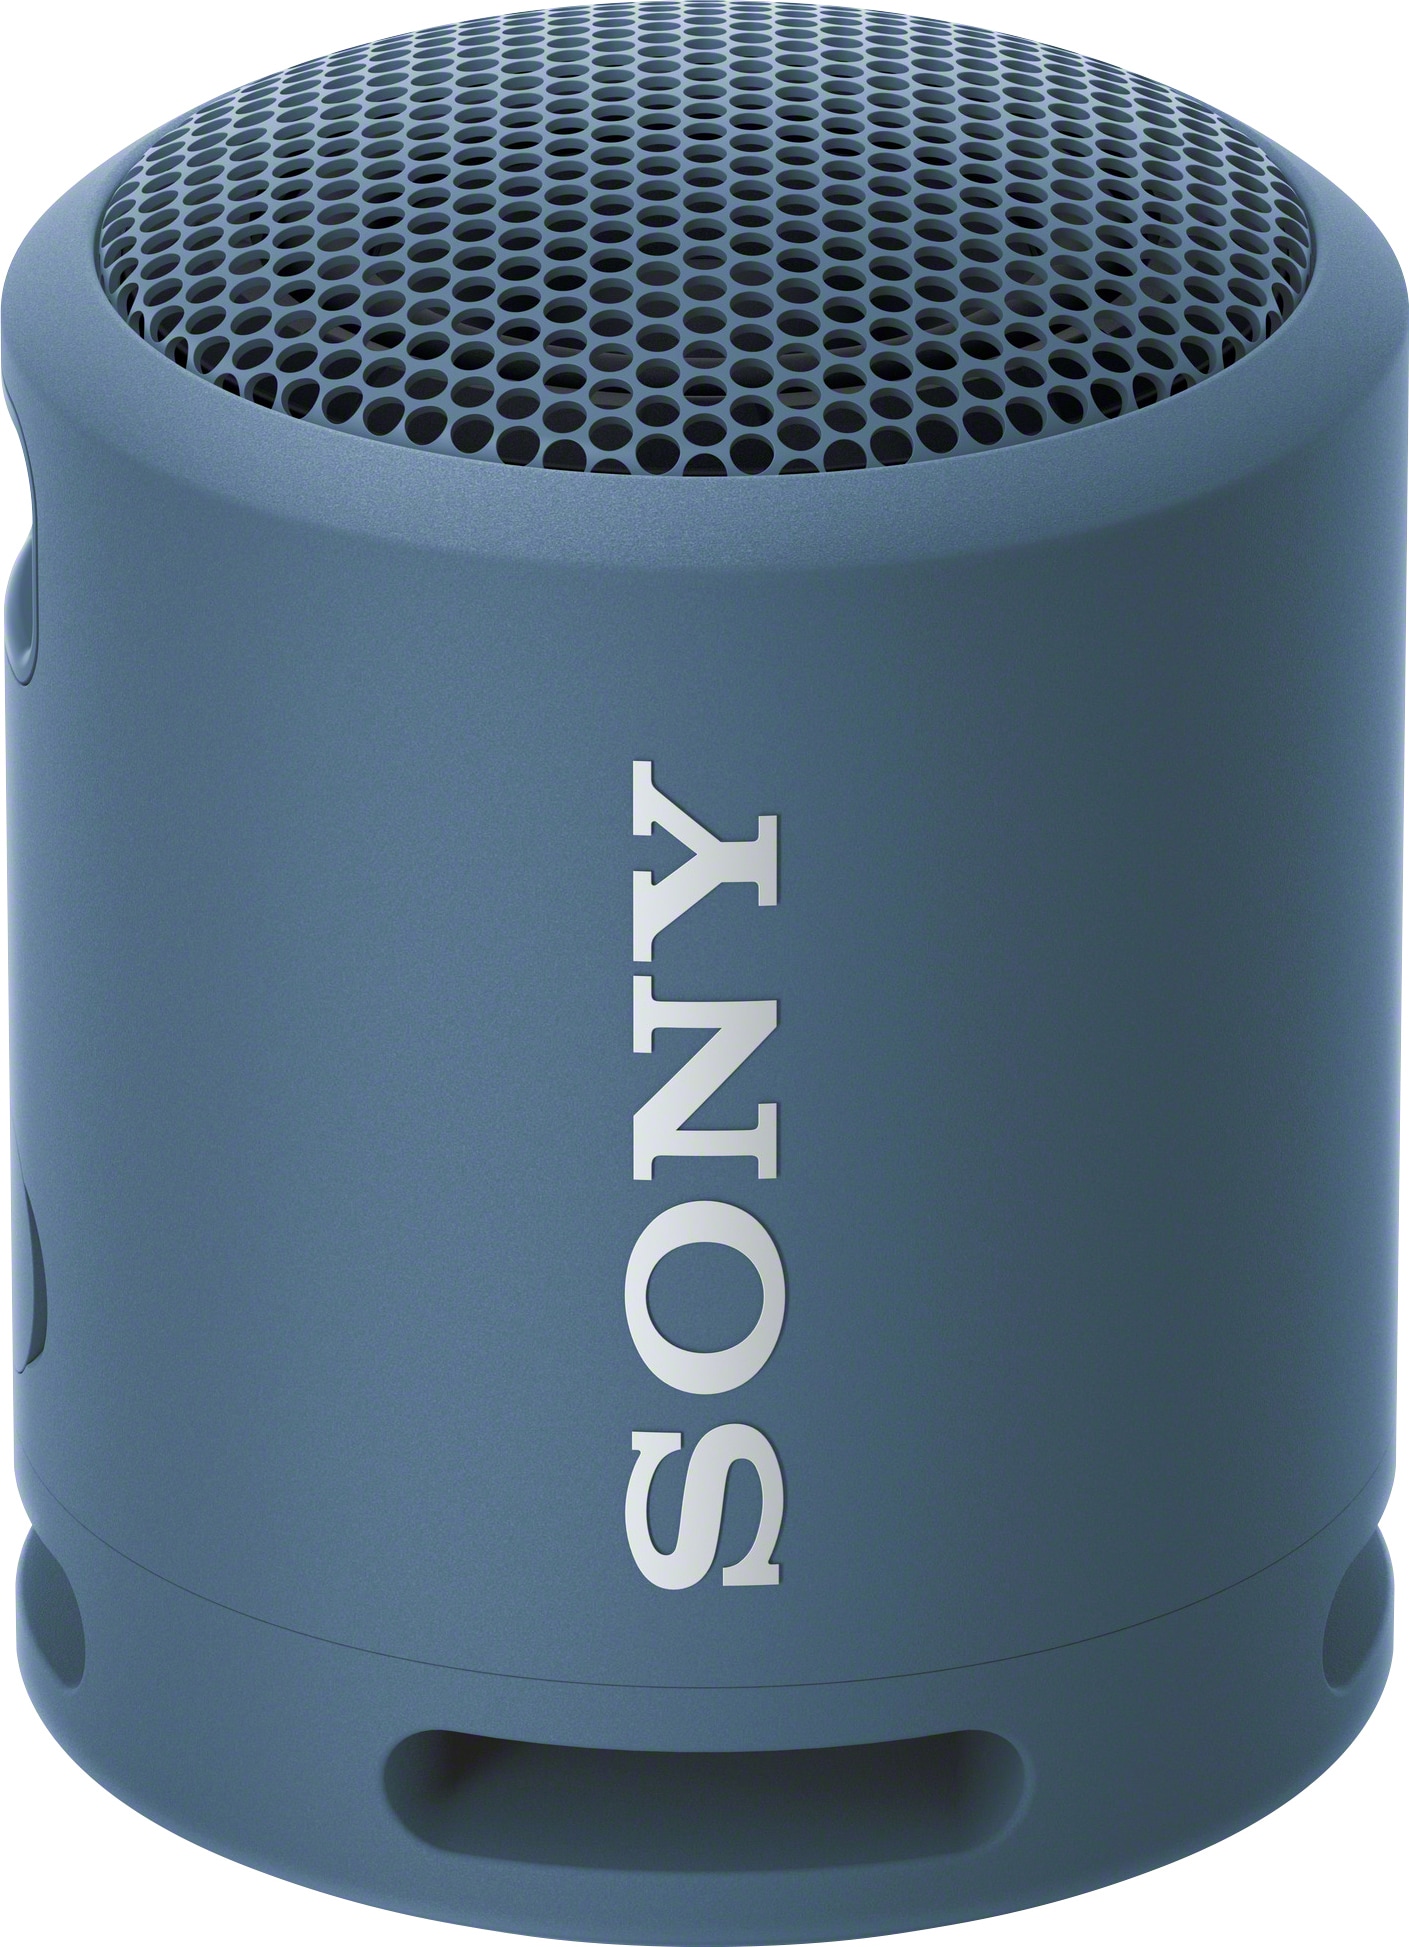 Sony kannettava langaton kaiutin SRS-XB13 (sininen) - Gigantti verkkokauppa